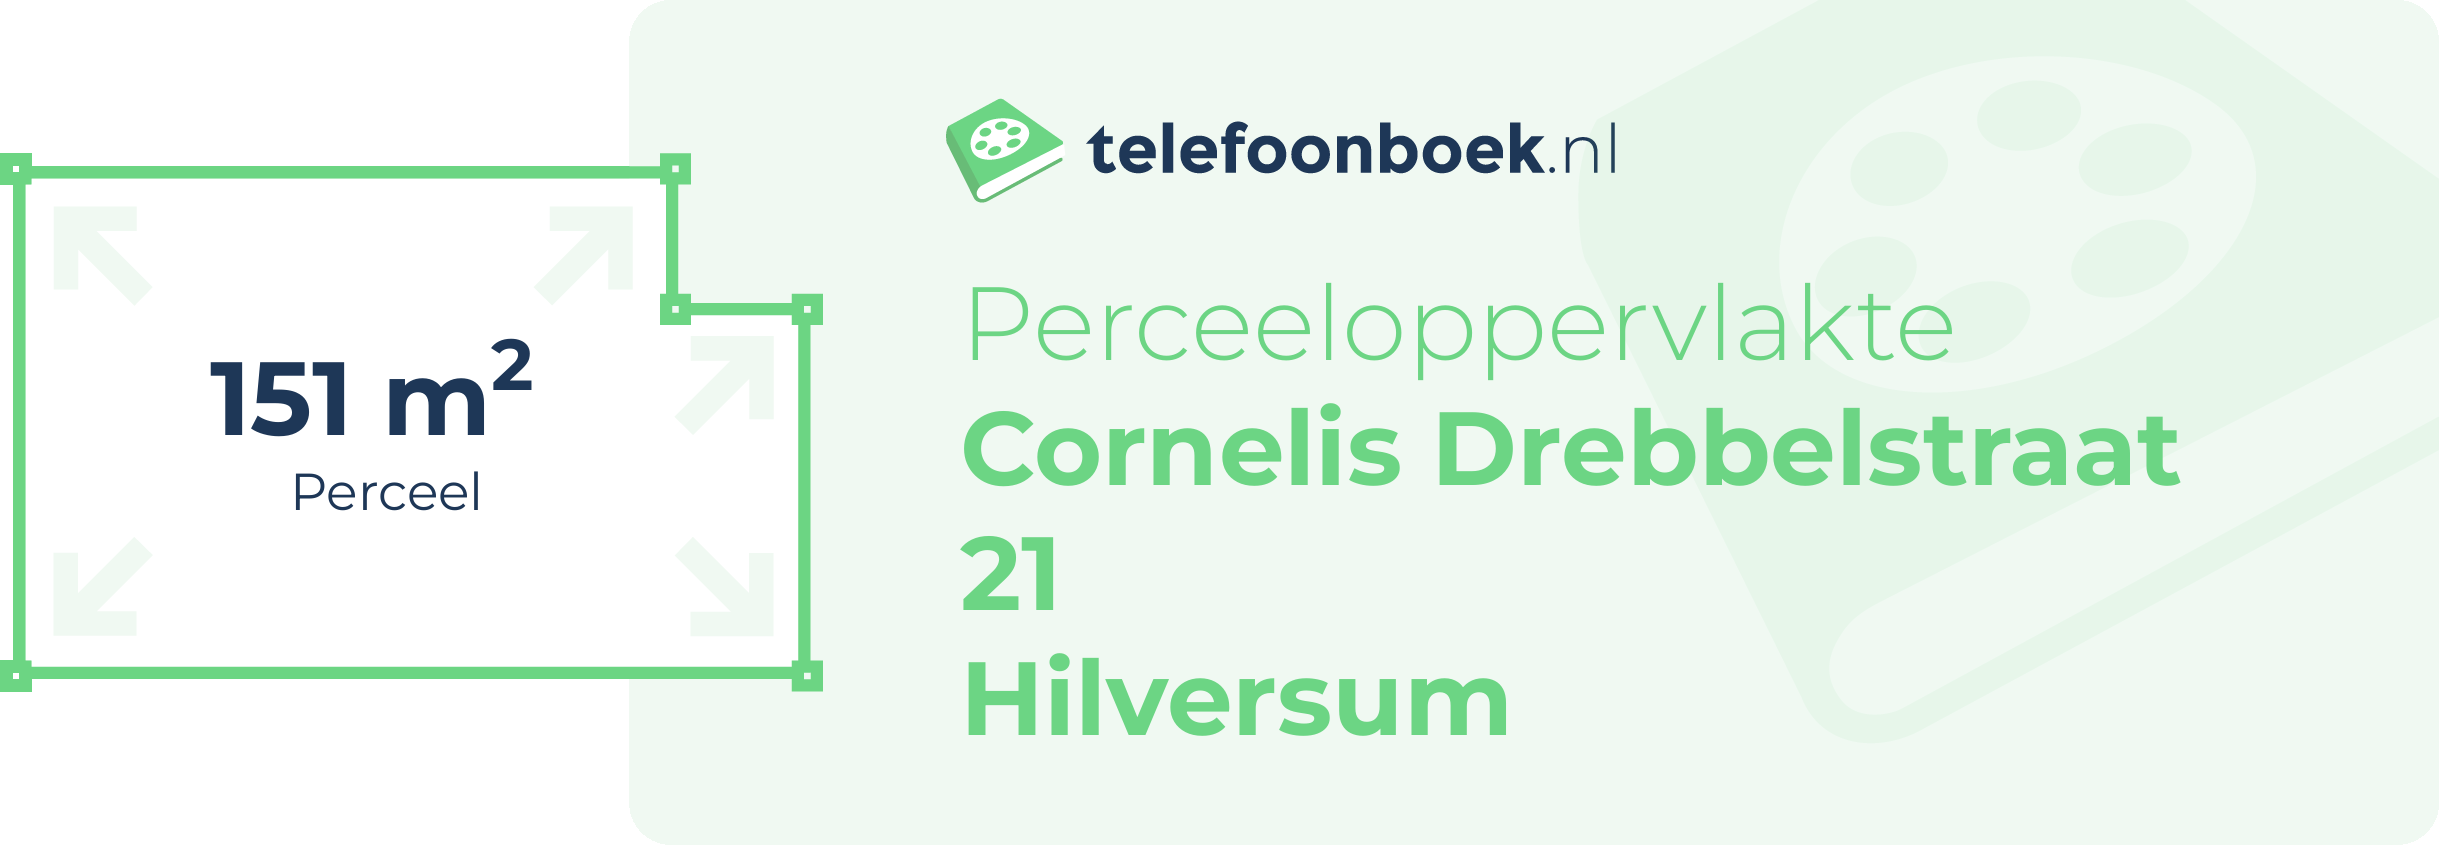 Perceeloppervlakte Cornelis Drebbelstraat 21 Hilversum